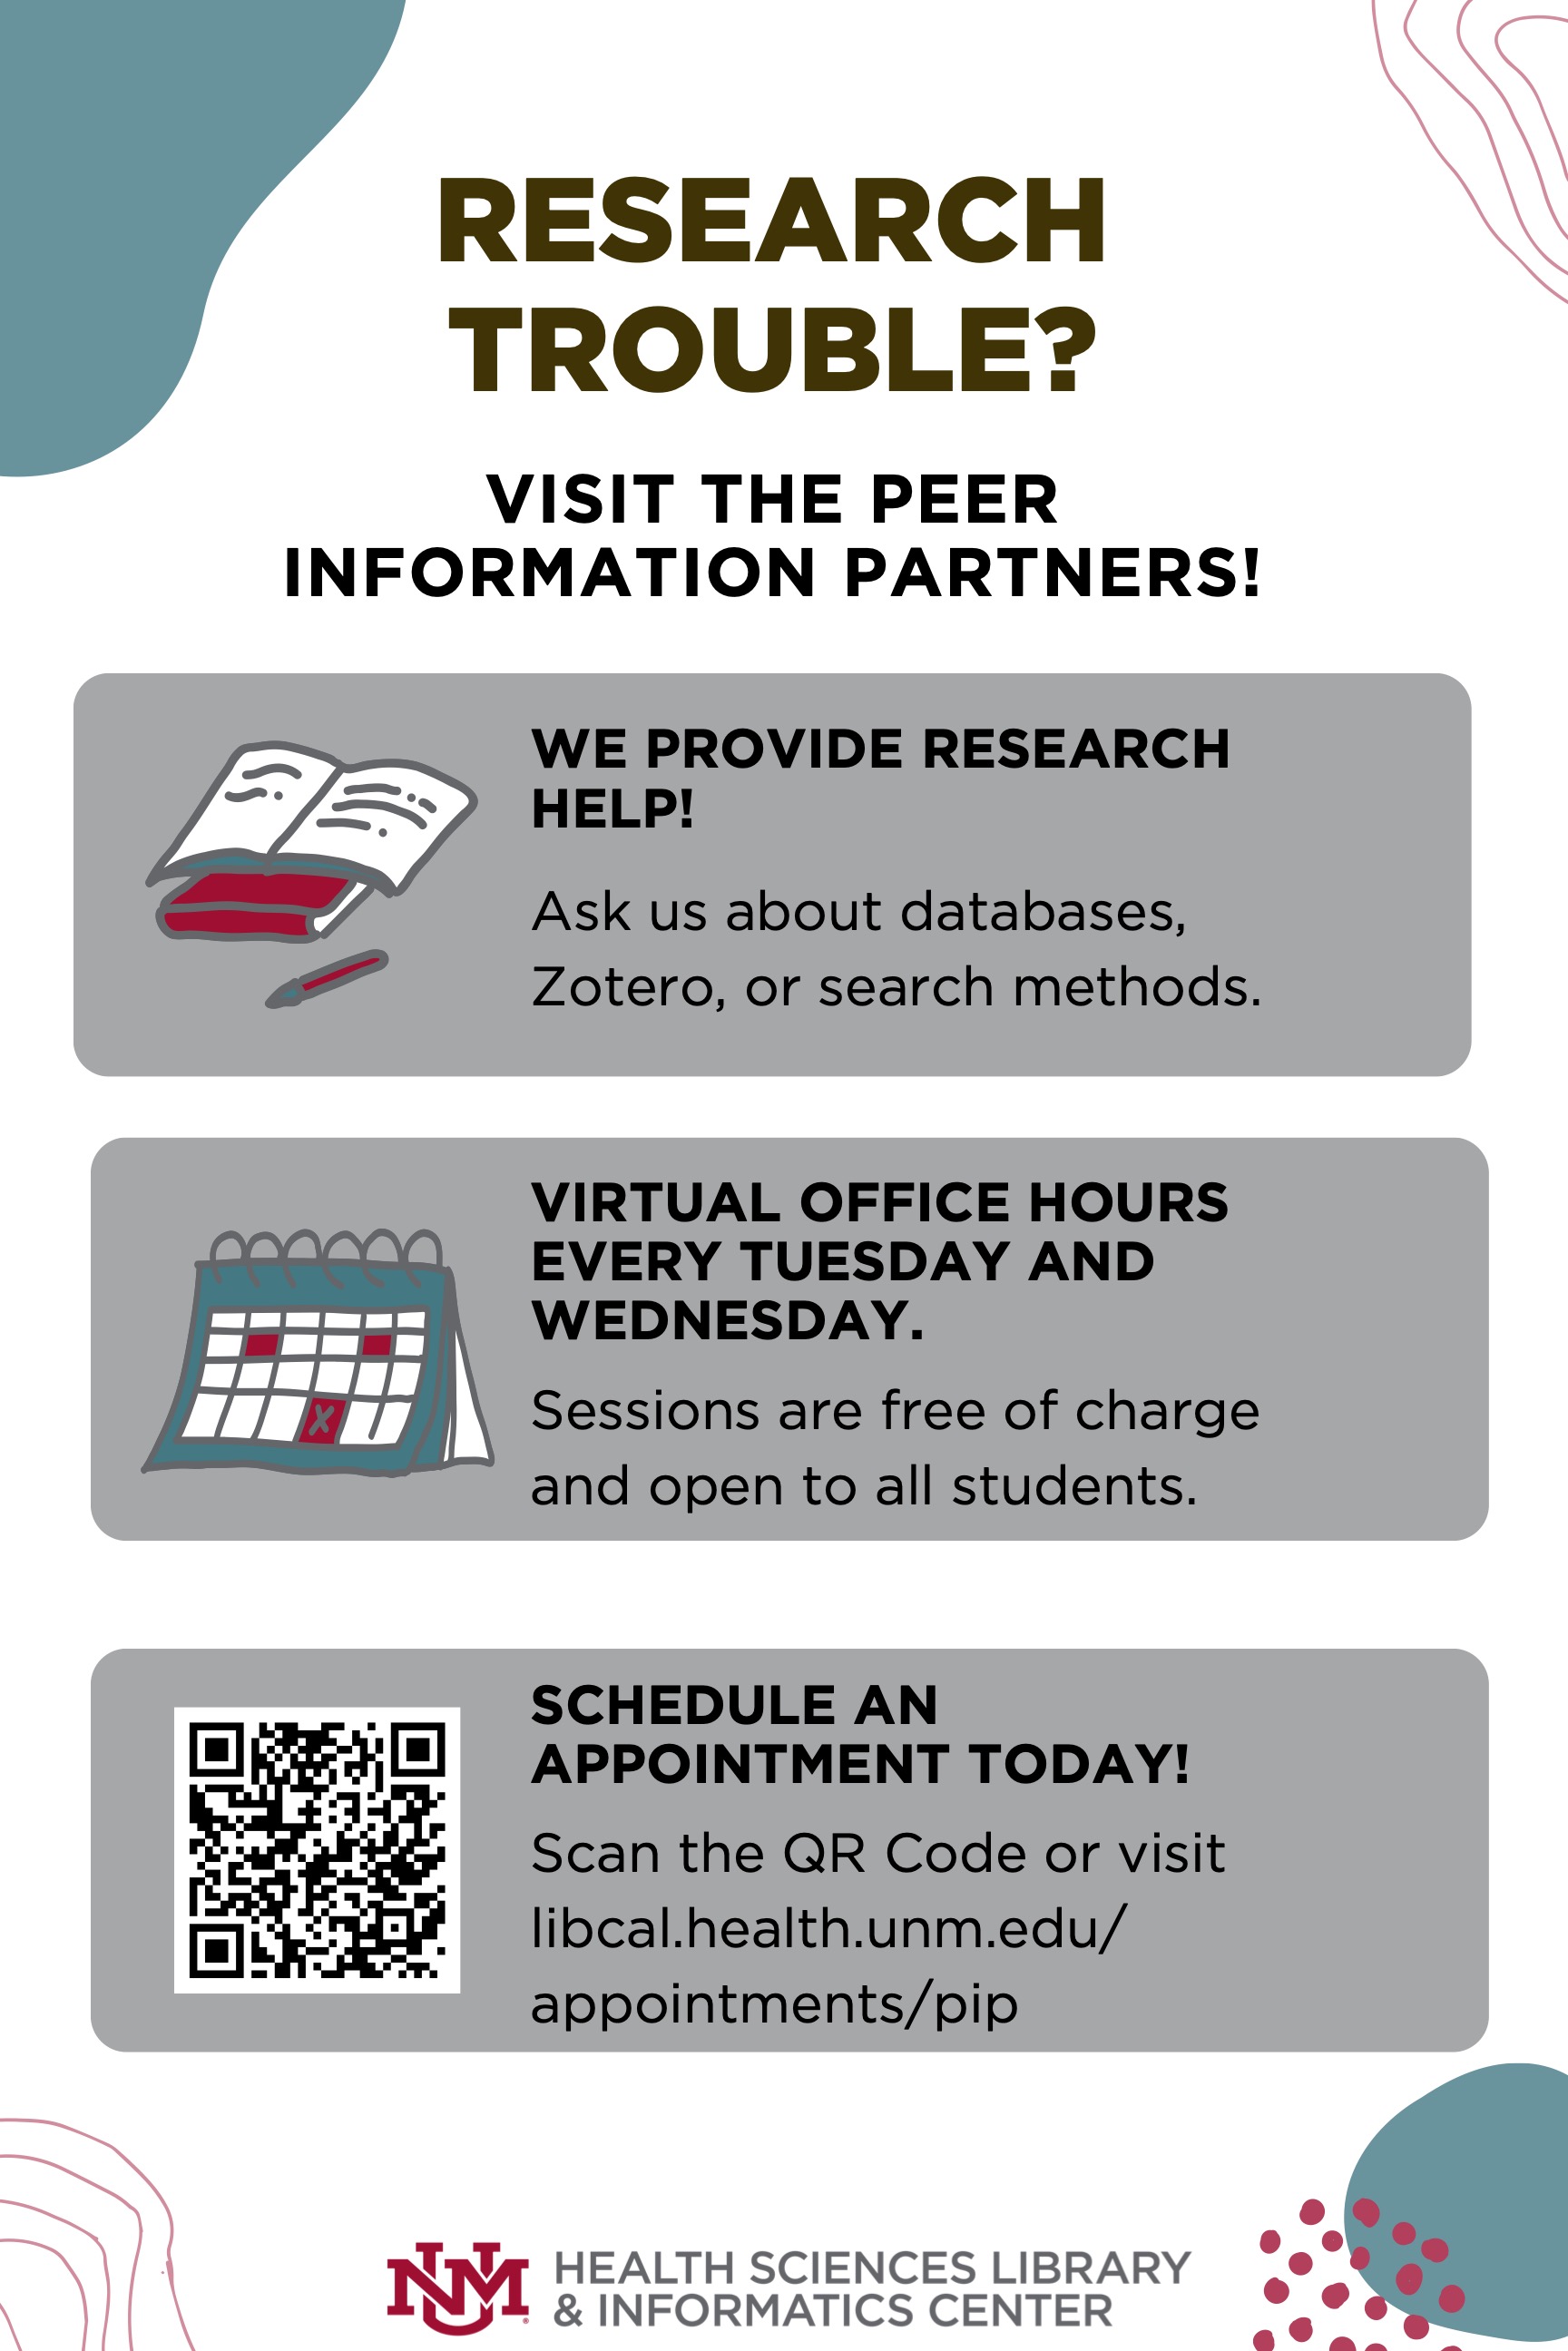 Dépliant pour l'aide à la recherche chez Peer Information Partners, les séances sont gratuites et les heures de bureau virtuelles tous les mardis et mercredis. Visitez libcal.health.unm.edu/appointments/pip pour plus d'informations